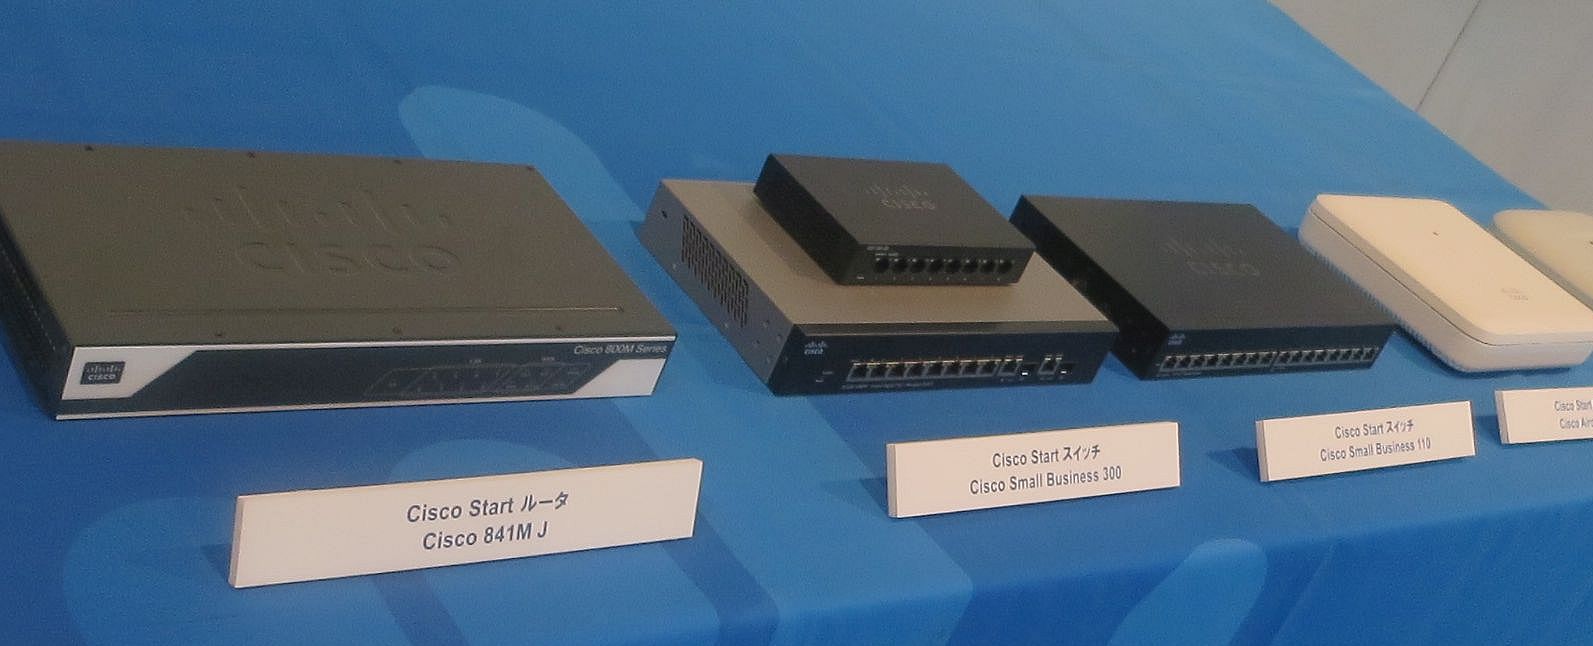 【お年玉セール特価】 シスコシステムズ Cisco ISR 841M ルータ 8ポート 卓上型 Advanced IP Services 取り寄せ商品